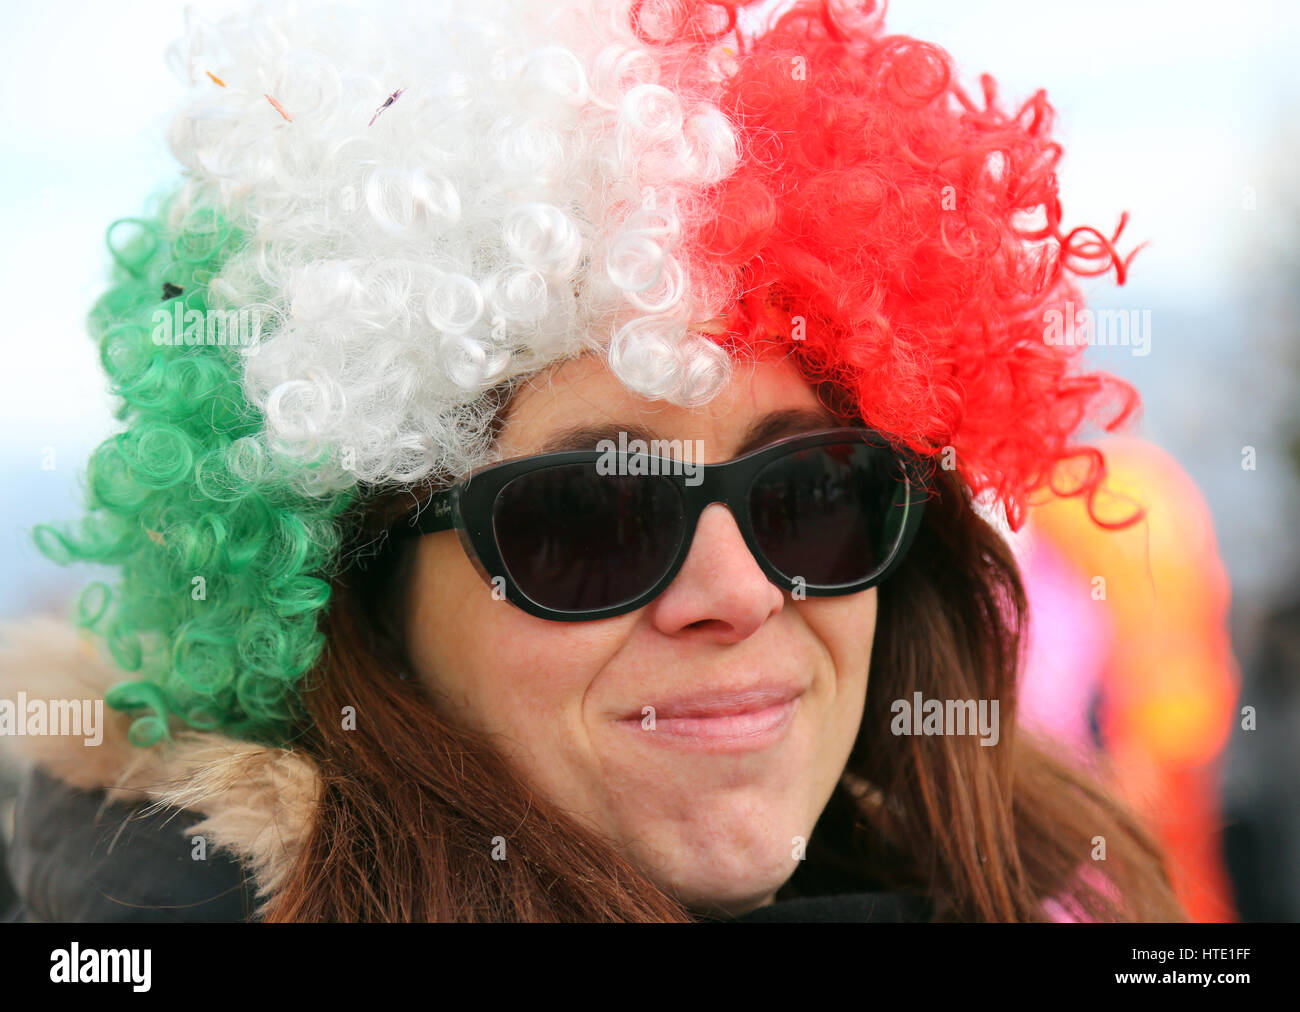 schönes Mädchen mit einem großen Perücke rot weiß grün und Sonnenbrillen  Stockfotografie - Alamy